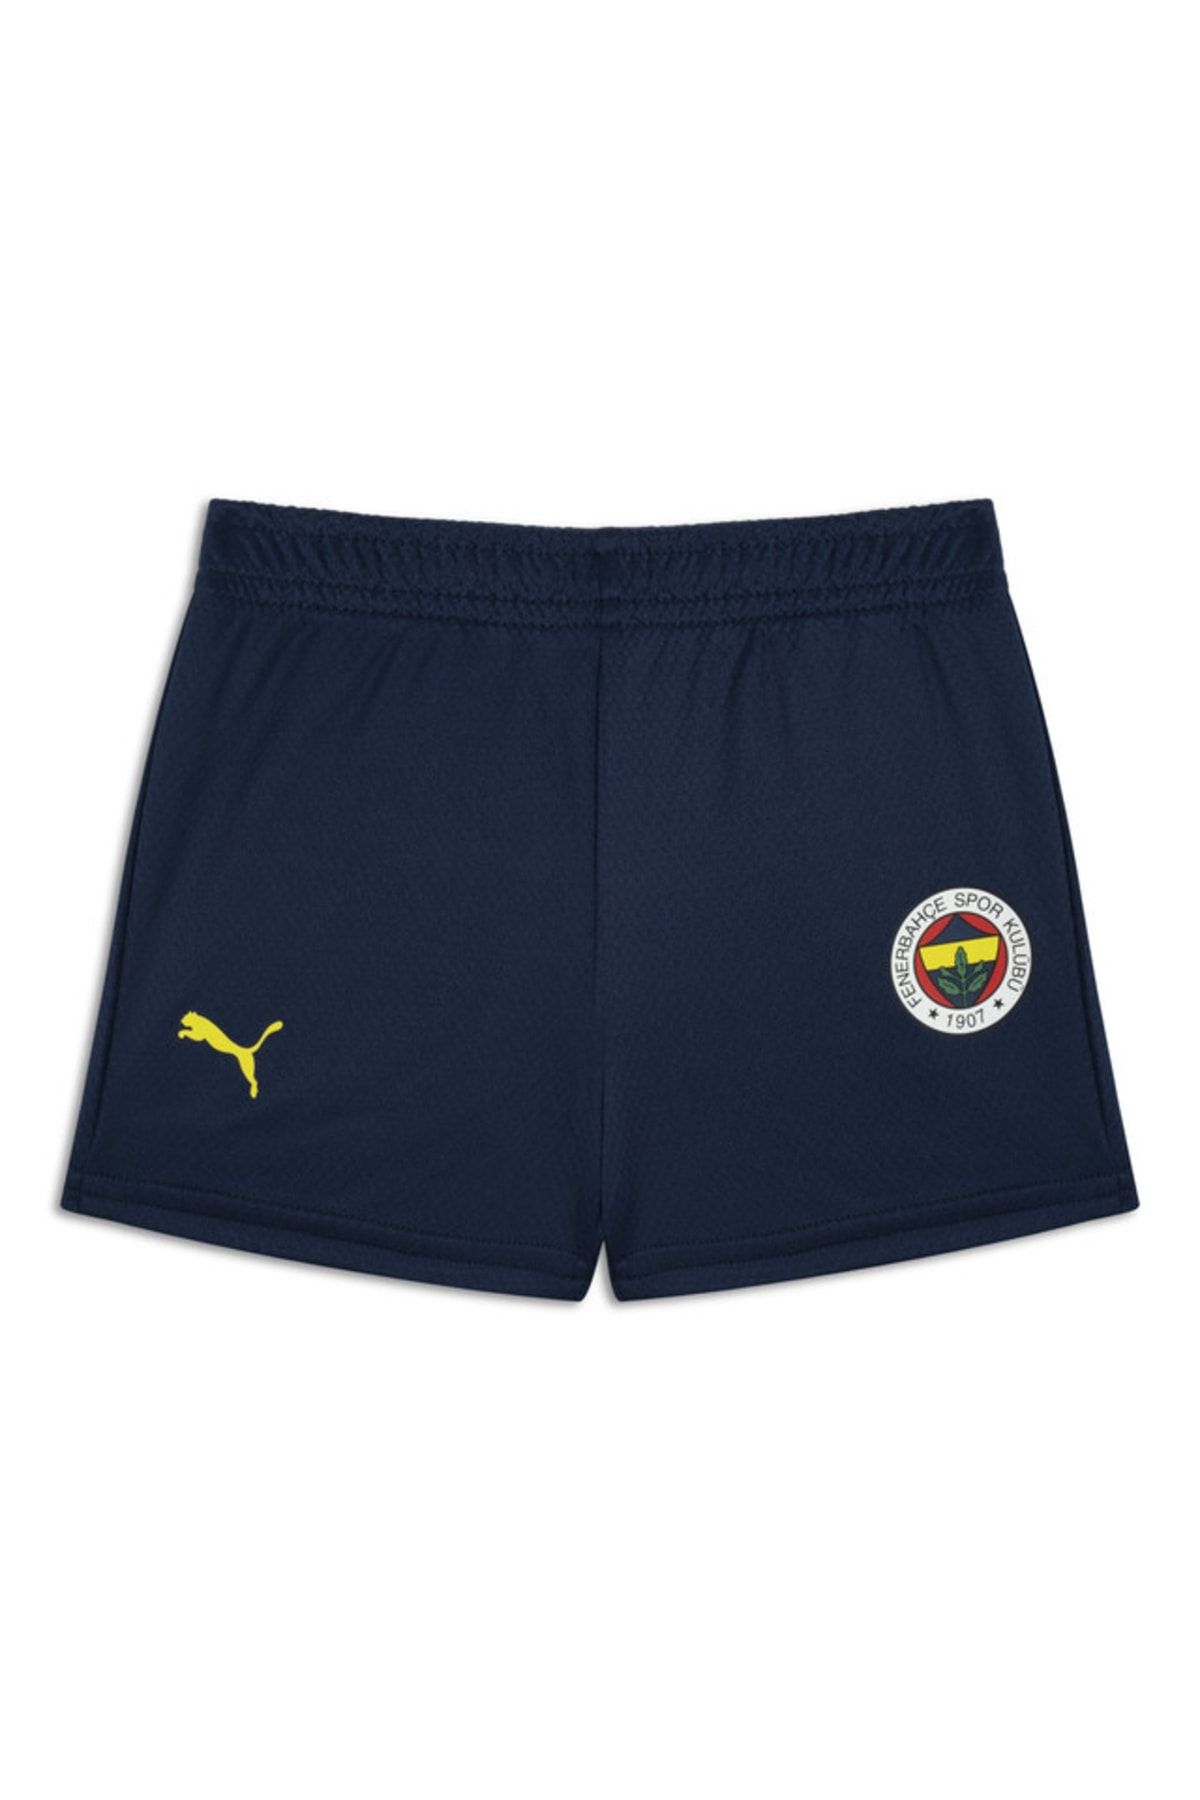 Puma Fenerbahçe Away Babykit Transparent Yellow Erkek Çocuk Takım Forması